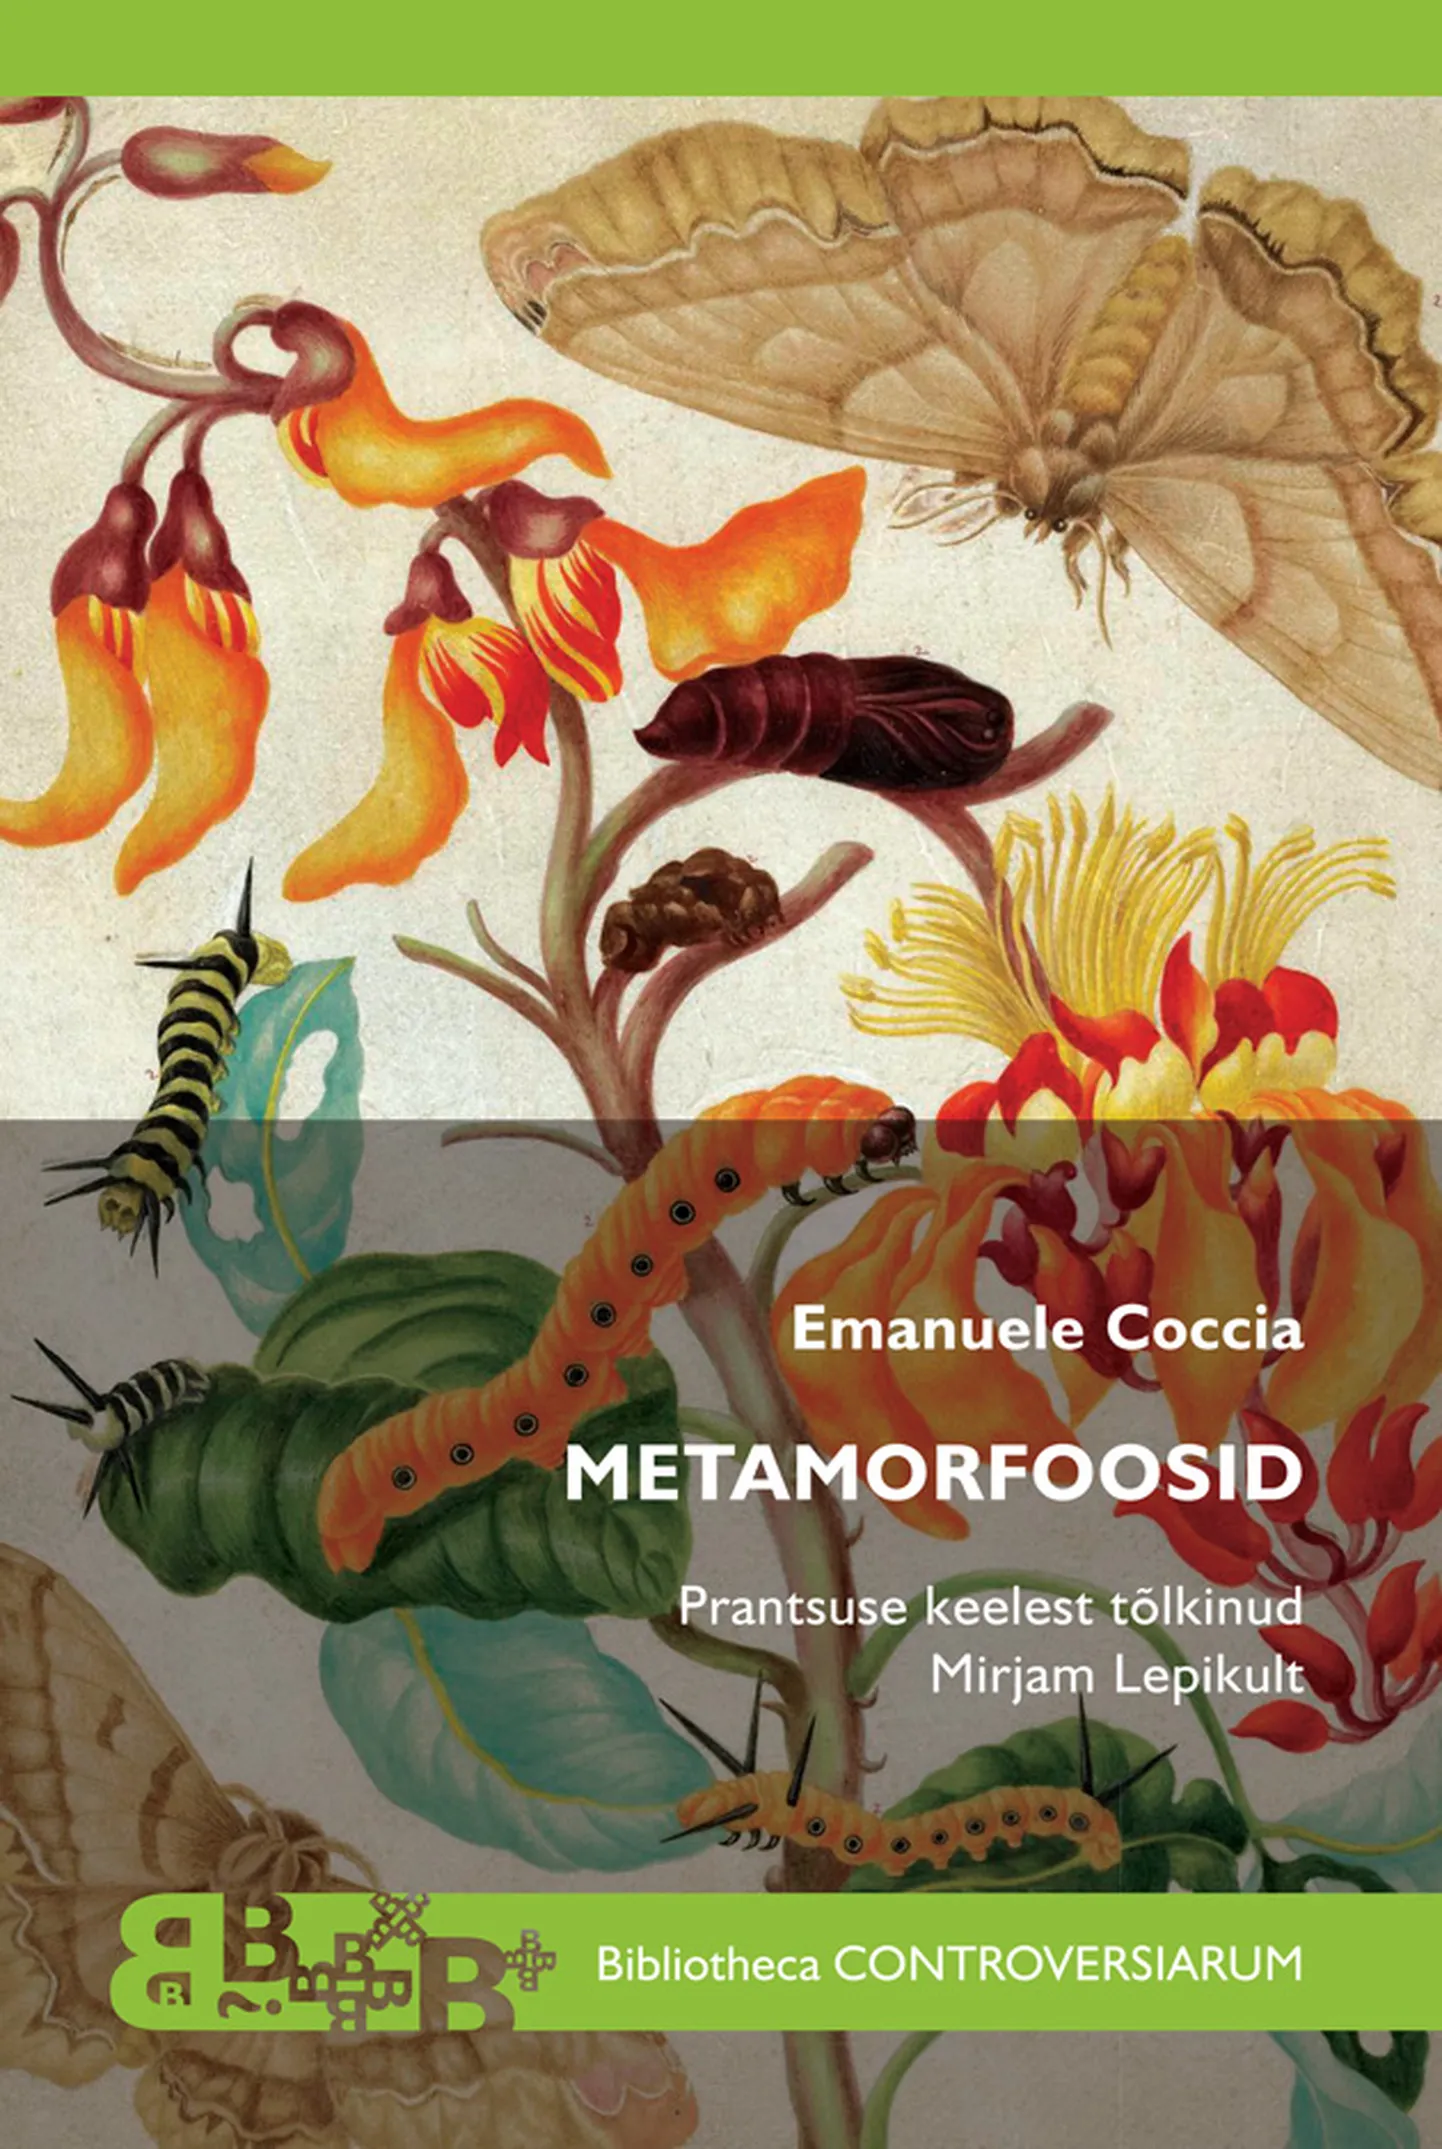 Emanuele Coccia, «Metamorfoosid».